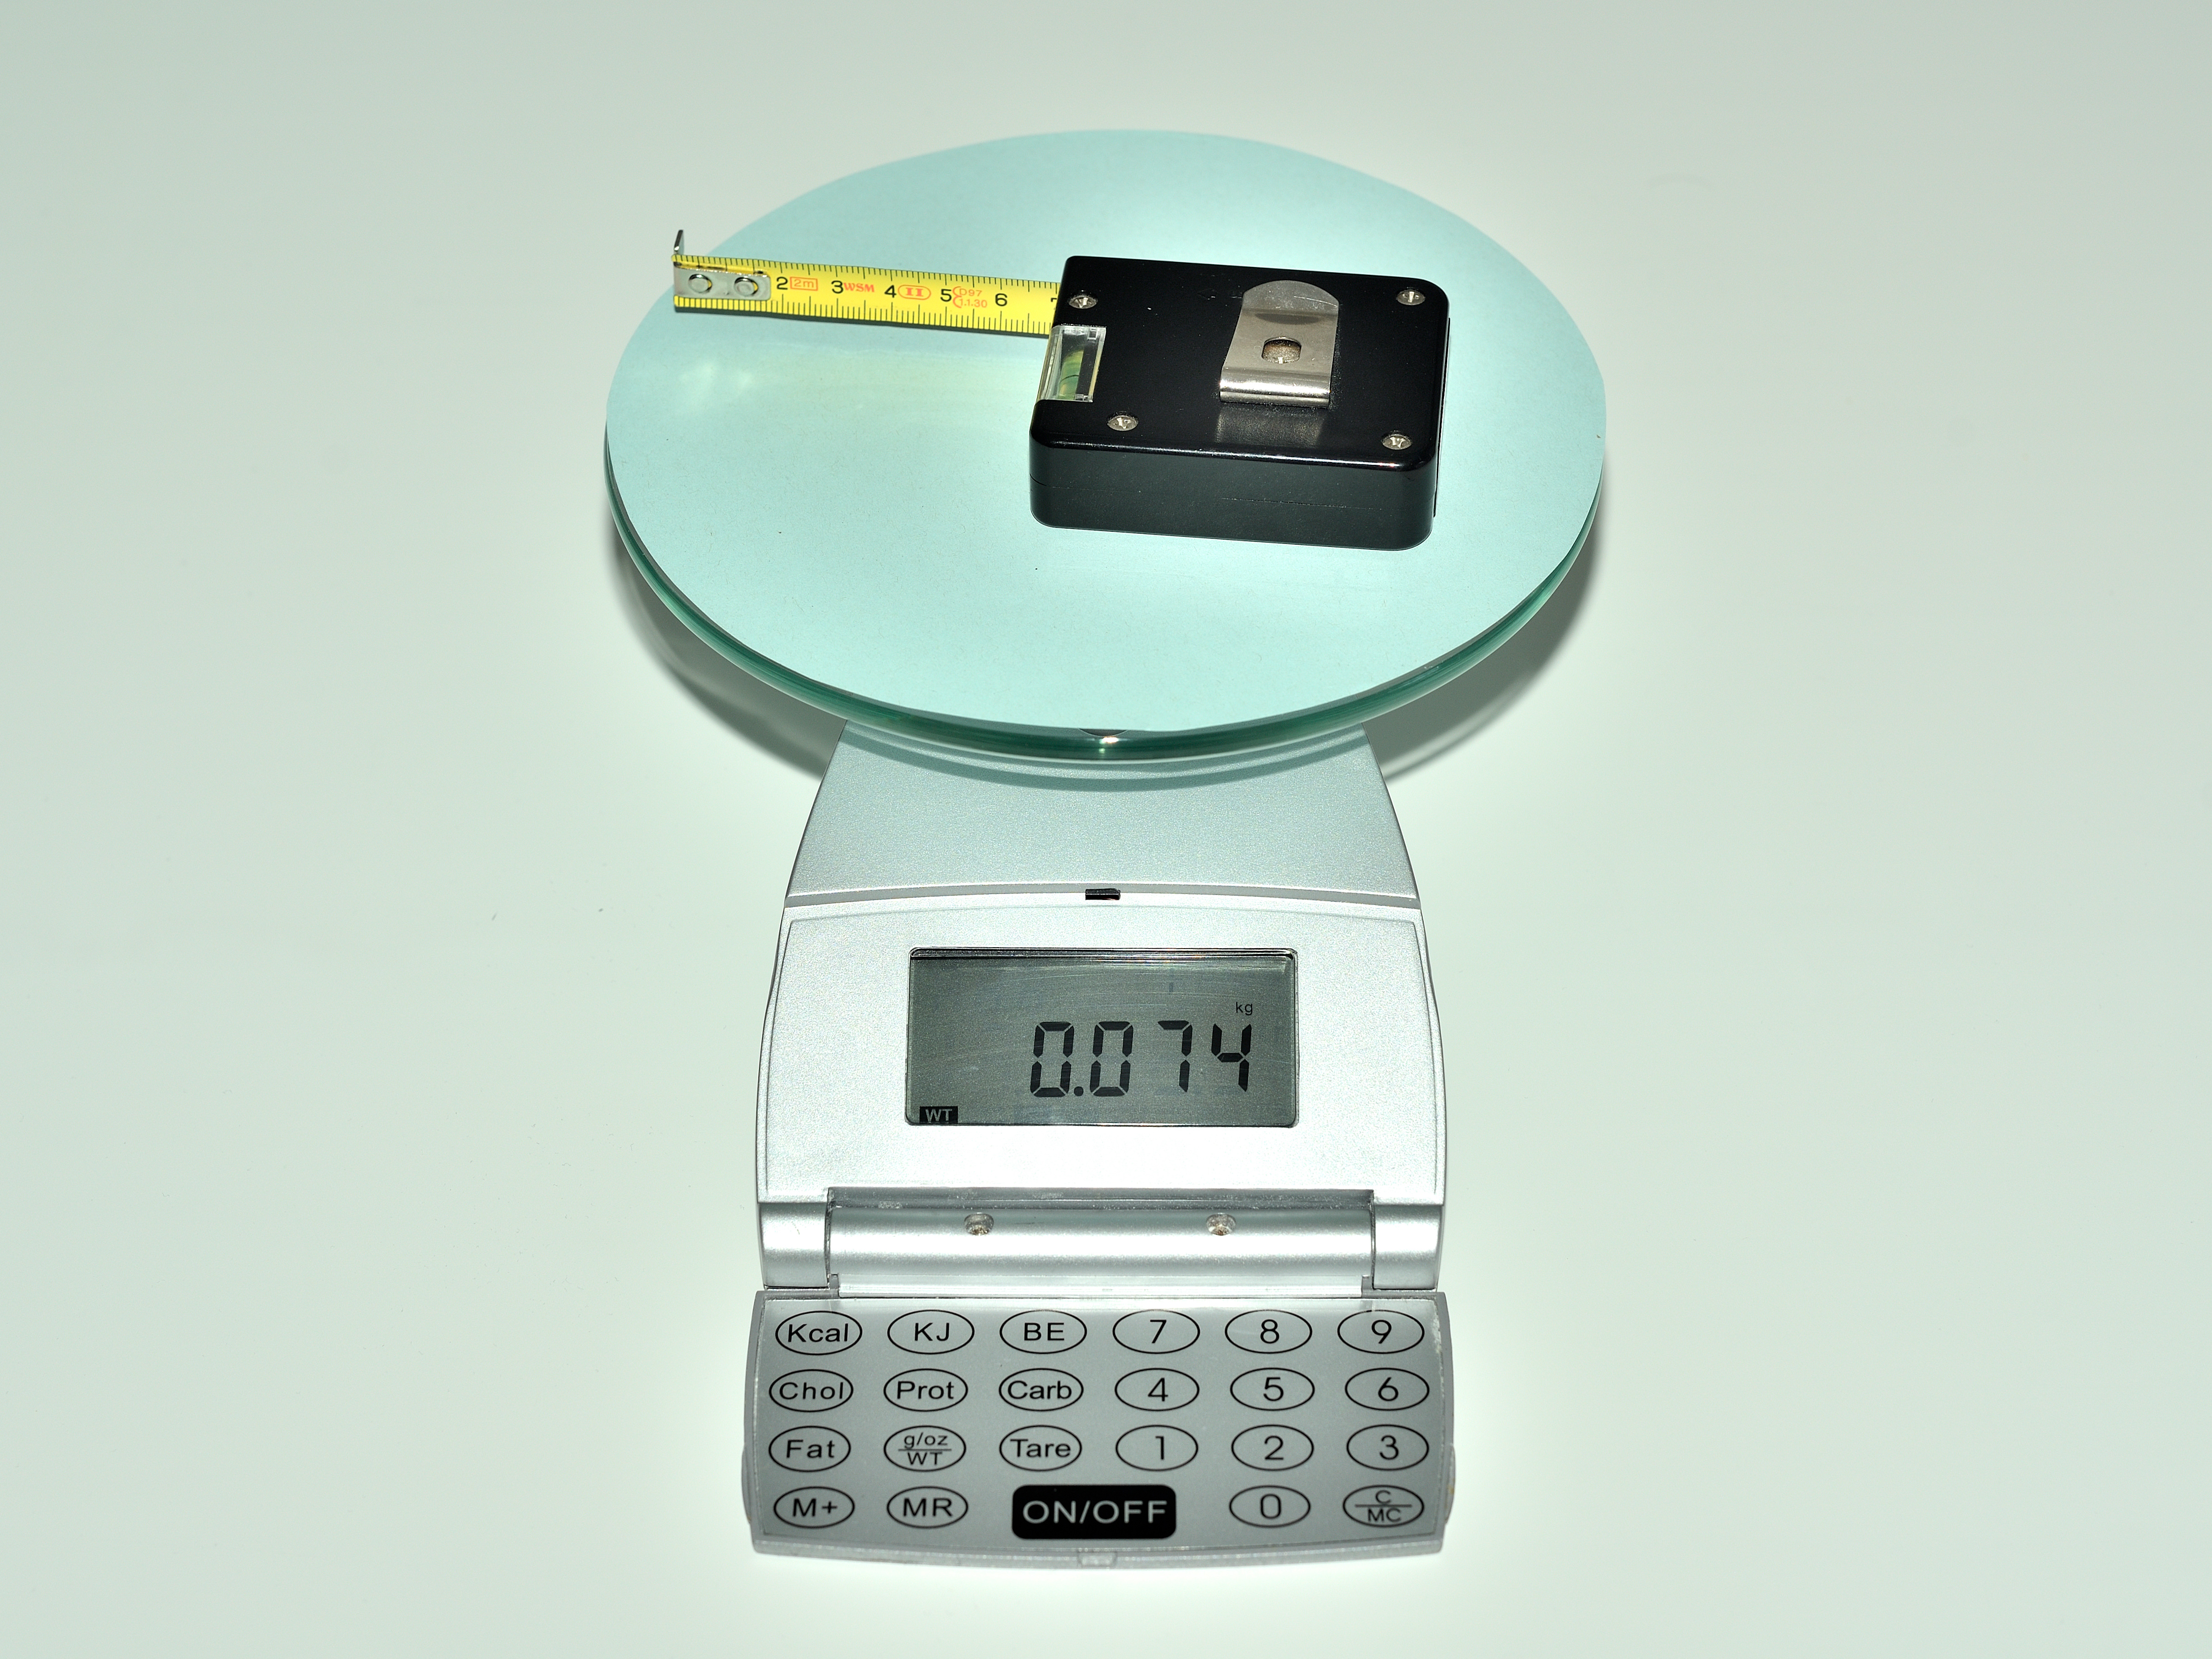 La imagen muestra una báscula, sobre la cual hay una cinta métrica que pesa 74 gramos